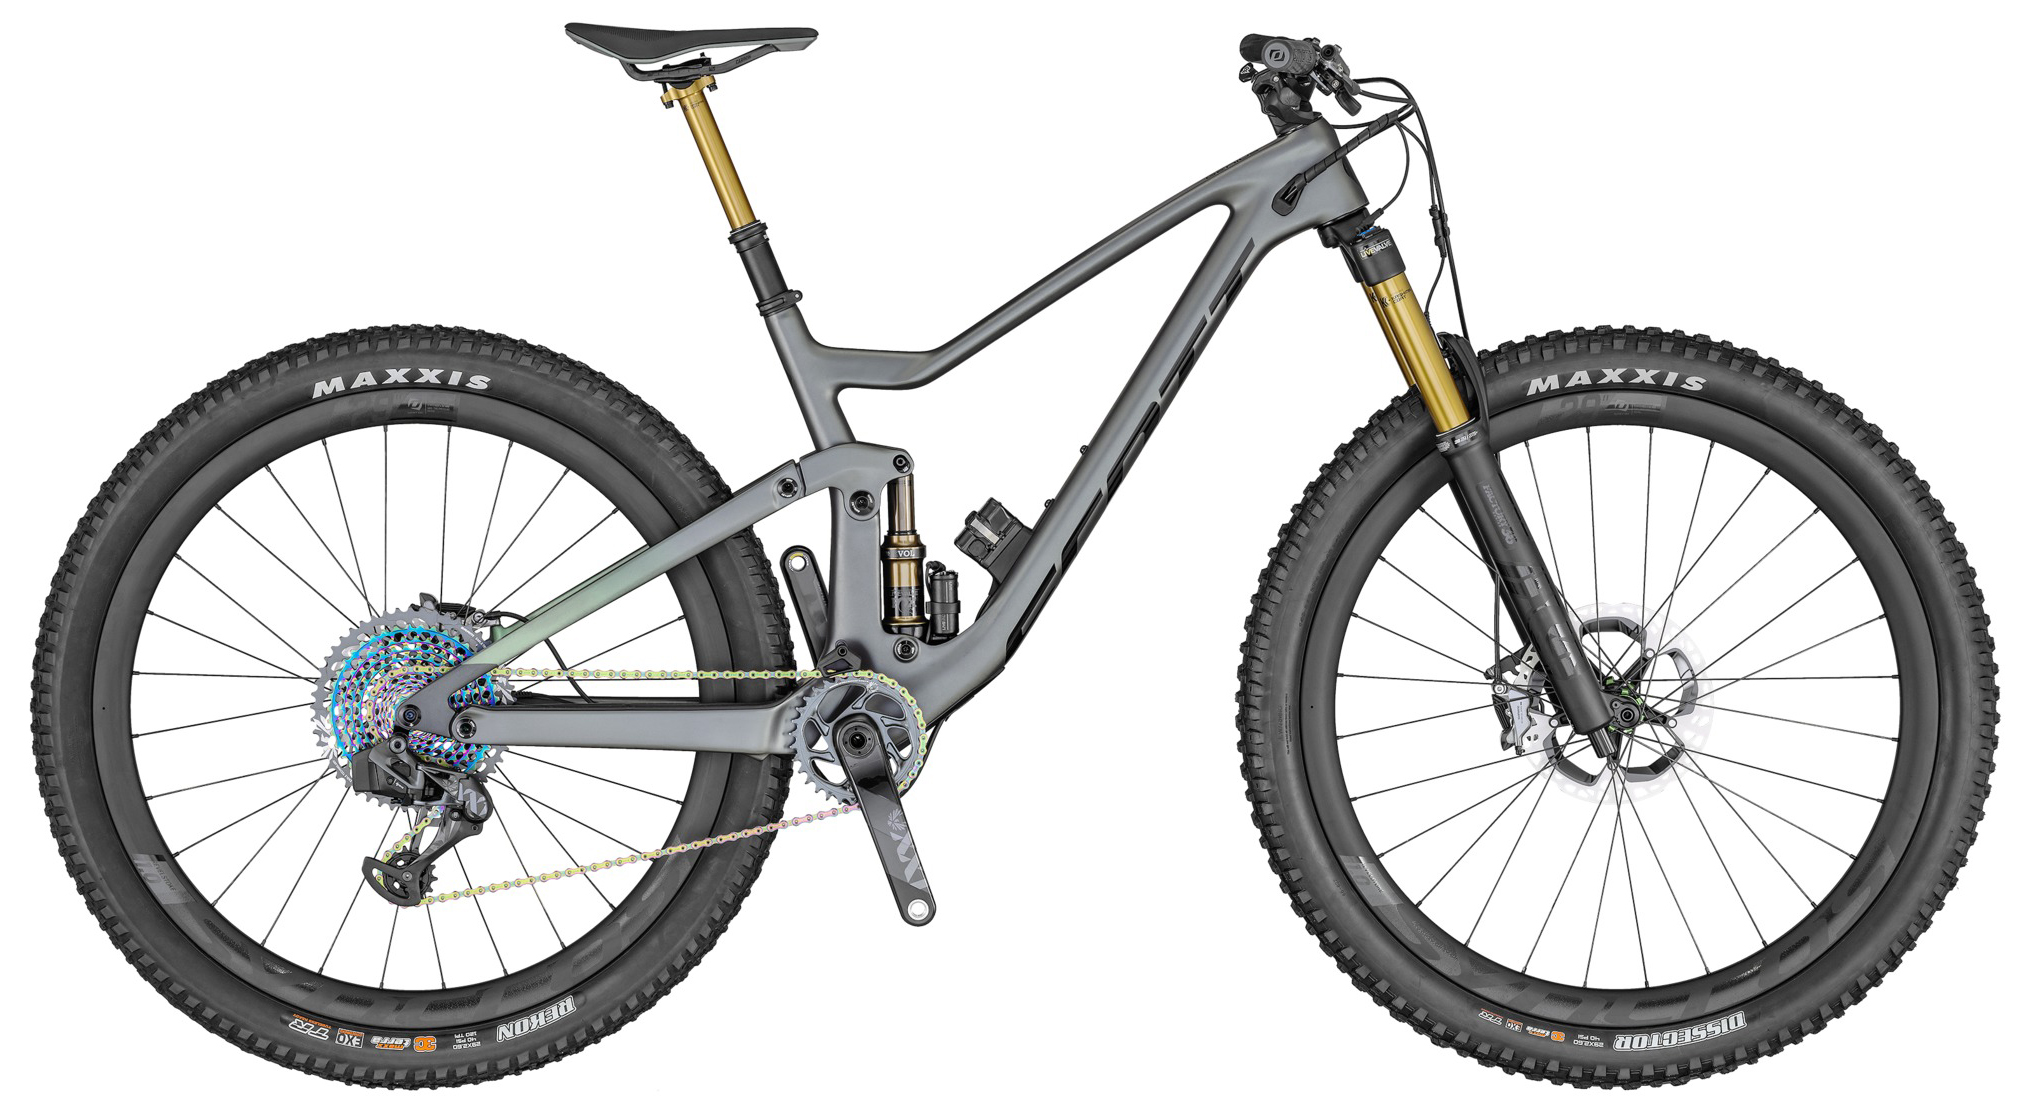  Отзывы о Двухподвесном велосипеде Scott Genius 900 Ultimate AXS 2020